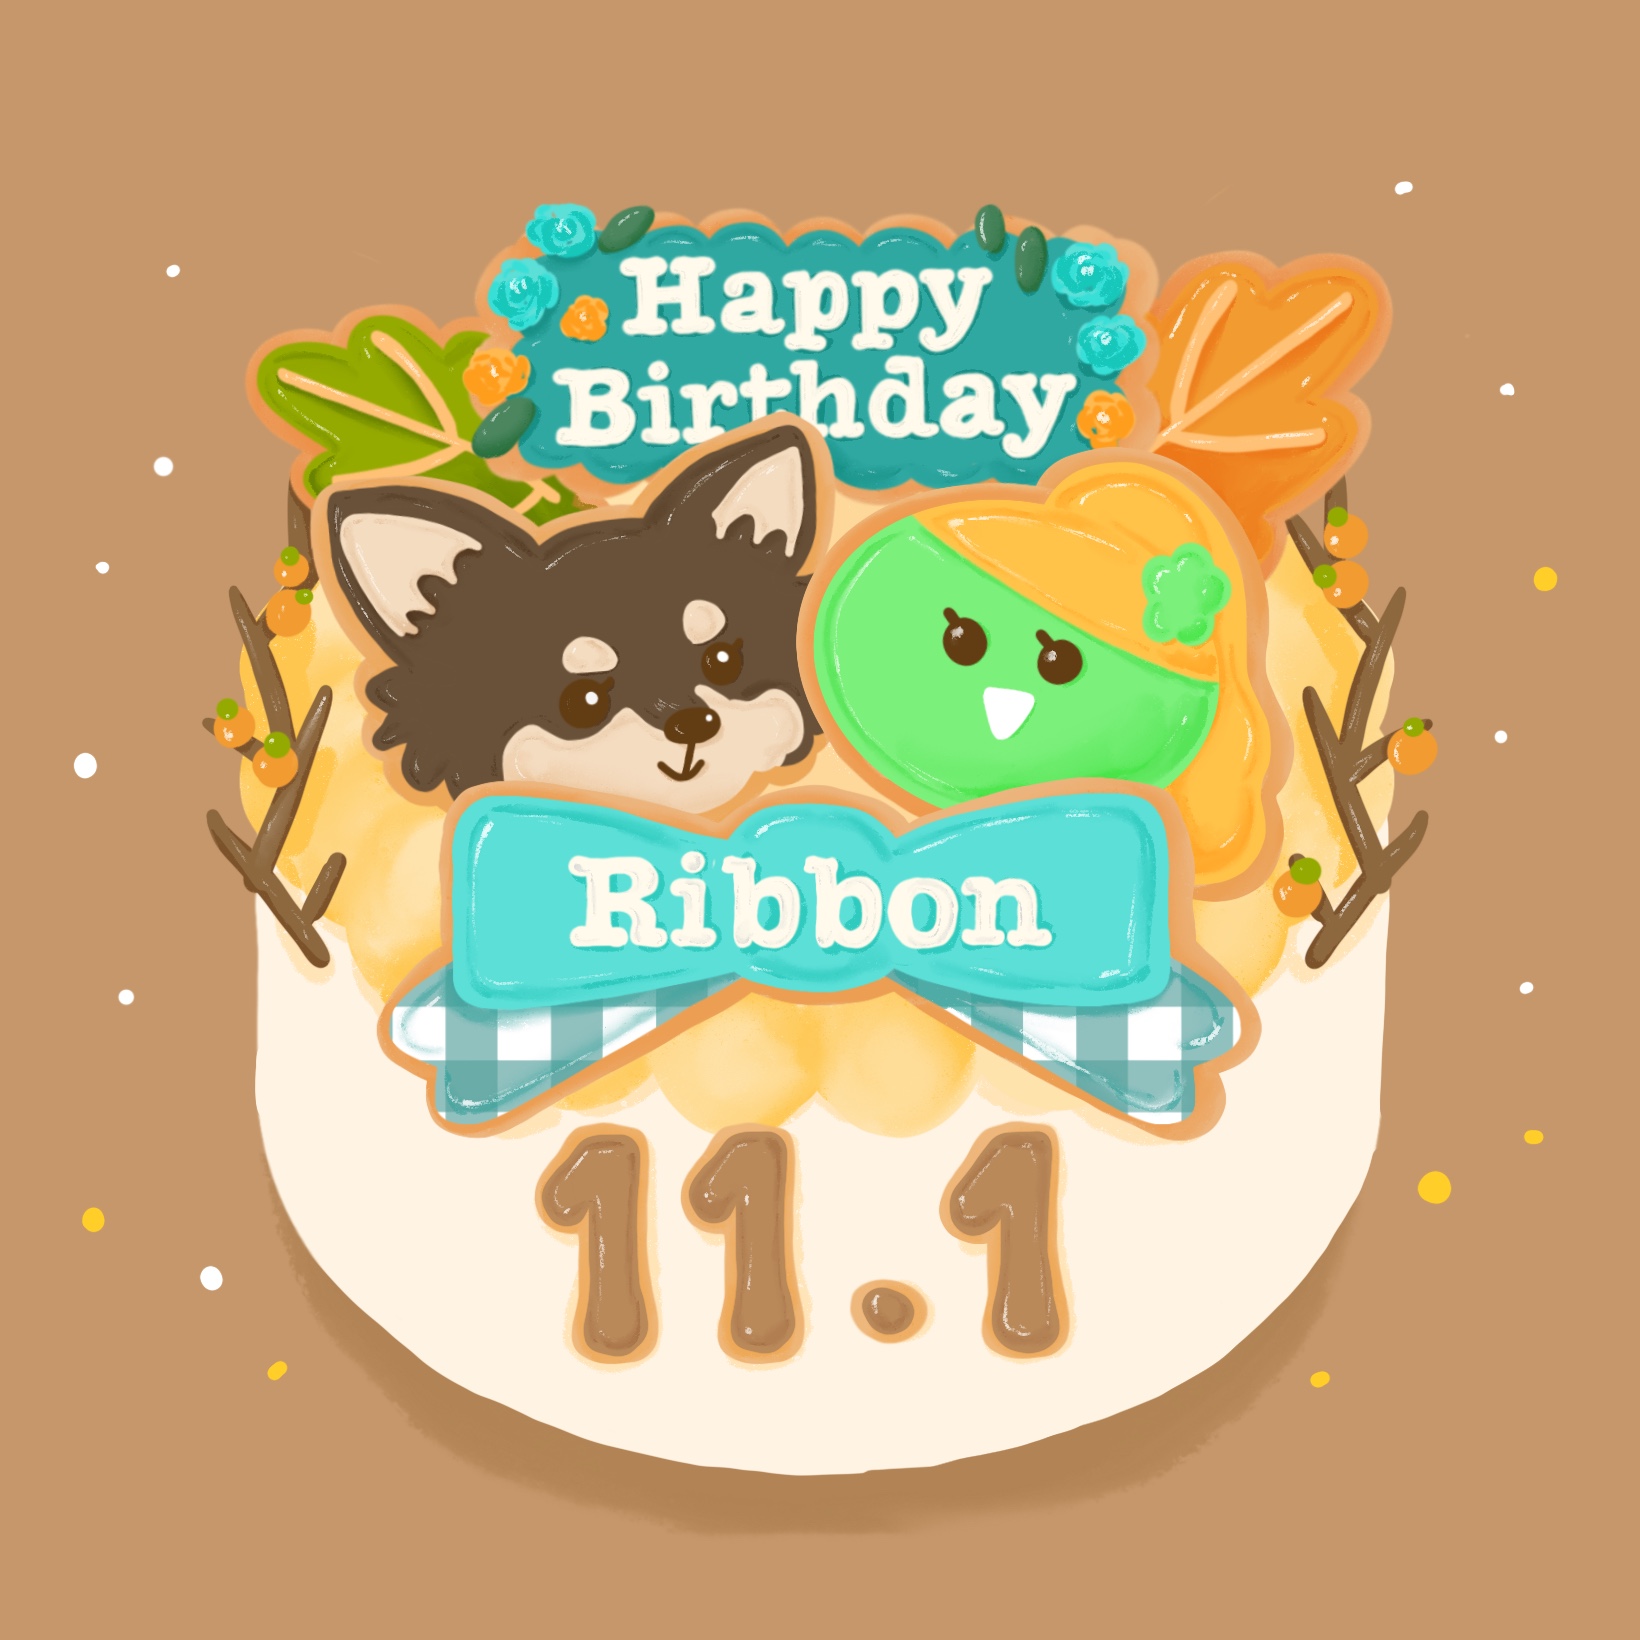 #1101　Happy Birthday, Ribbon!